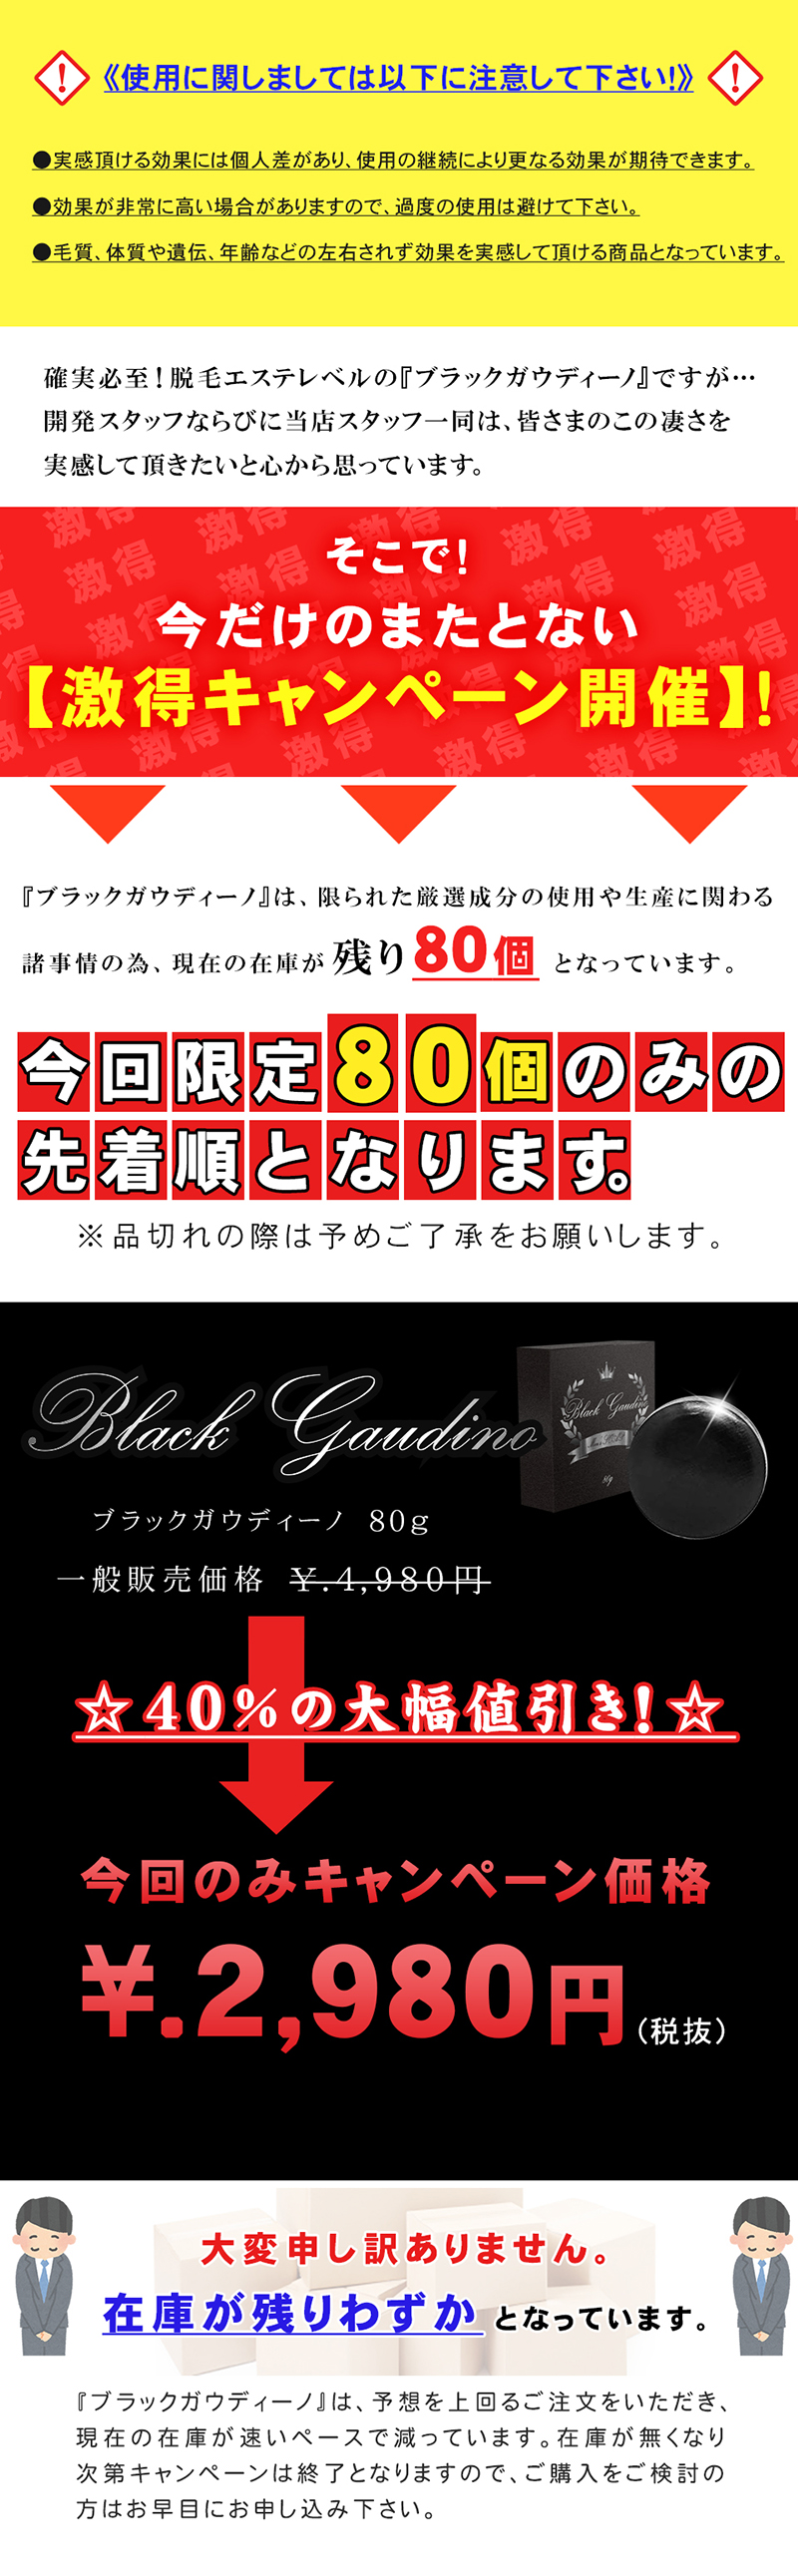 Black Gaudino(ブラックガウディーノ)